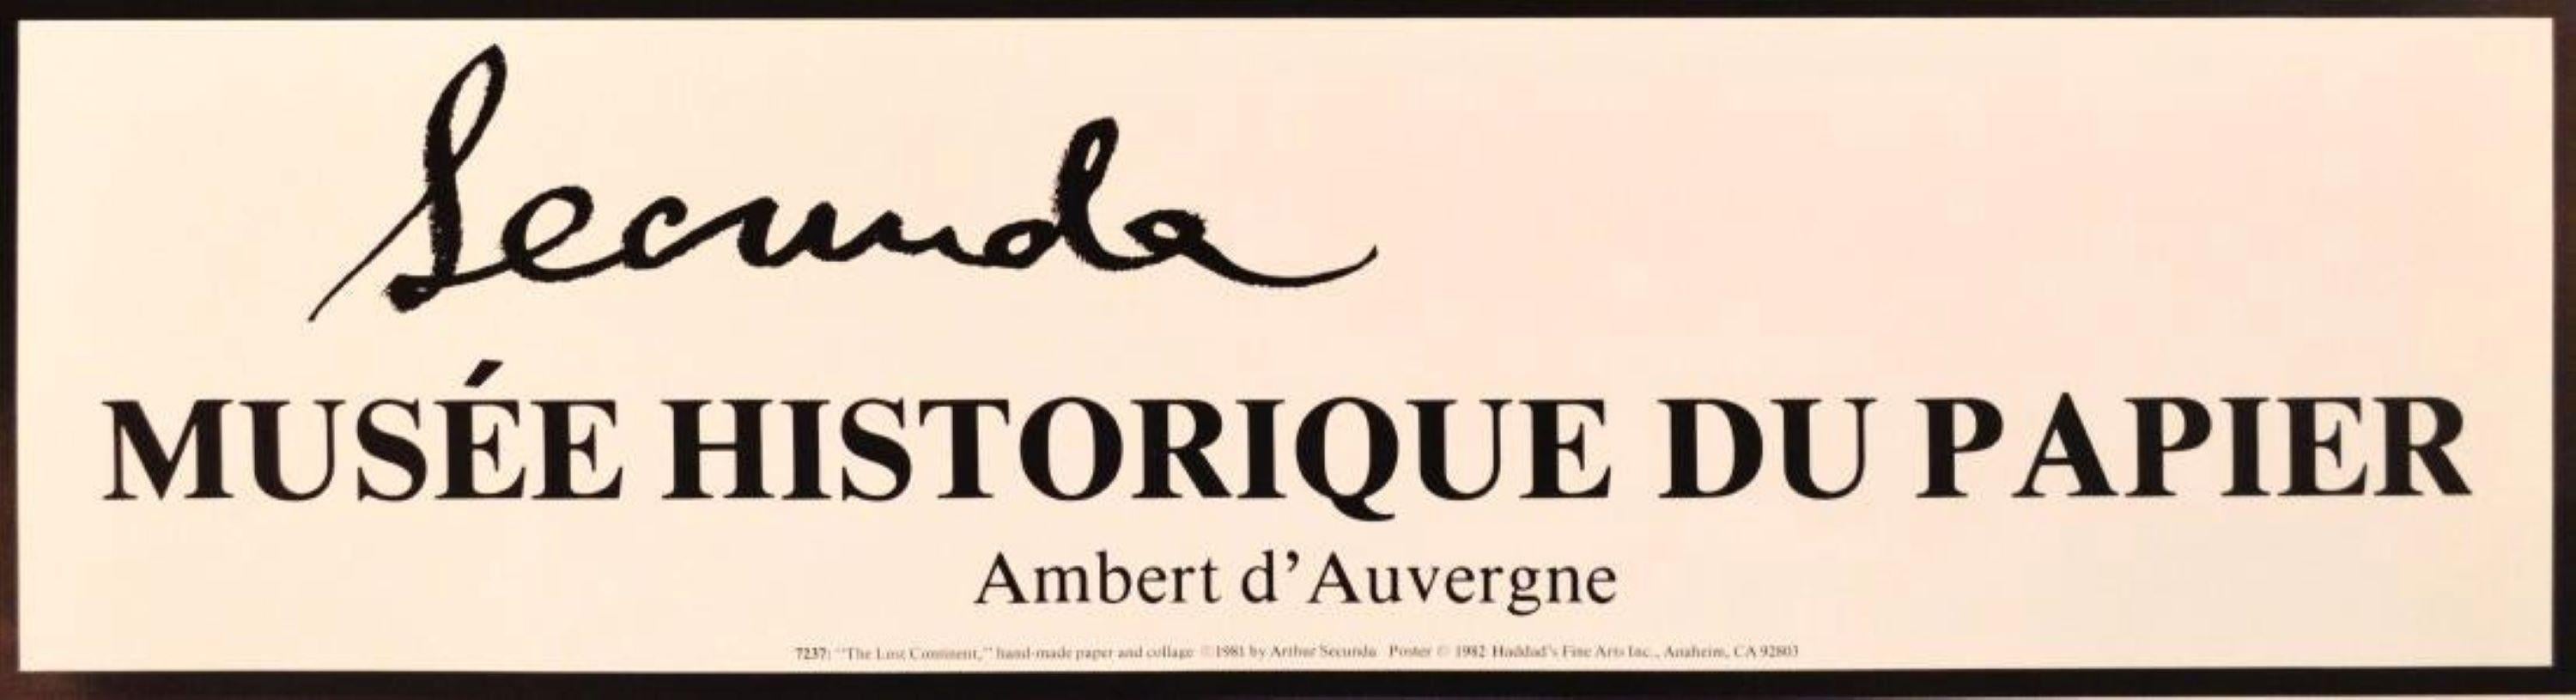 Mus'ee Historique du Papier, Ambert D'Auvergne: 